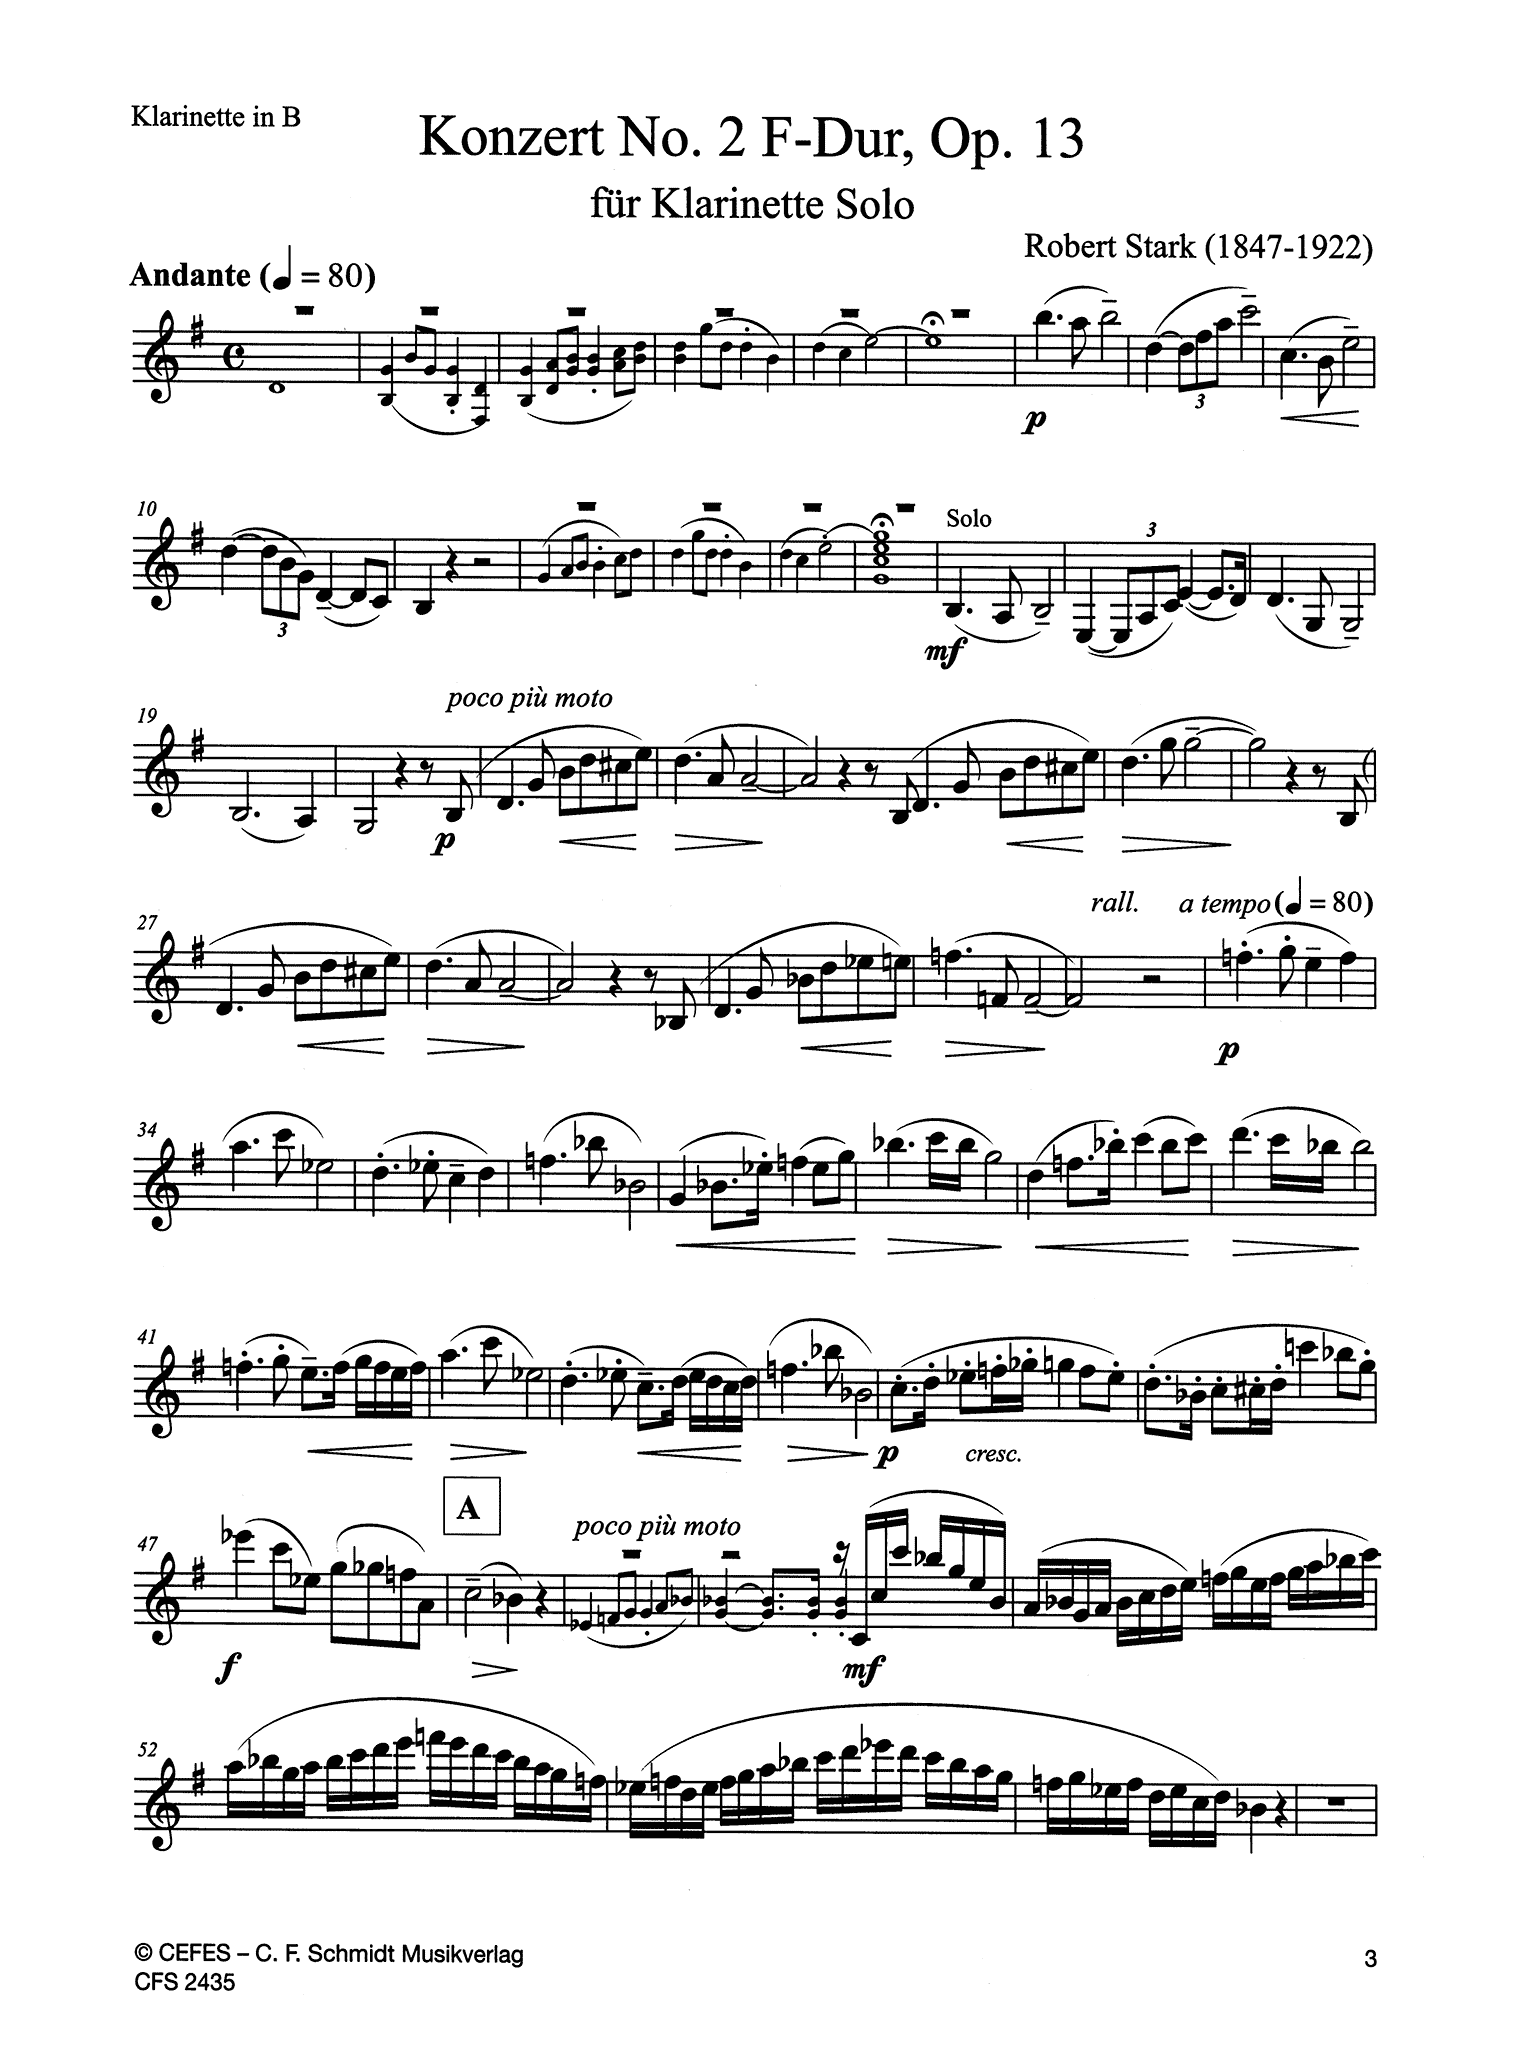 Clarinet Concerto No. 2 in F Major, Op. 13 Clarinet part